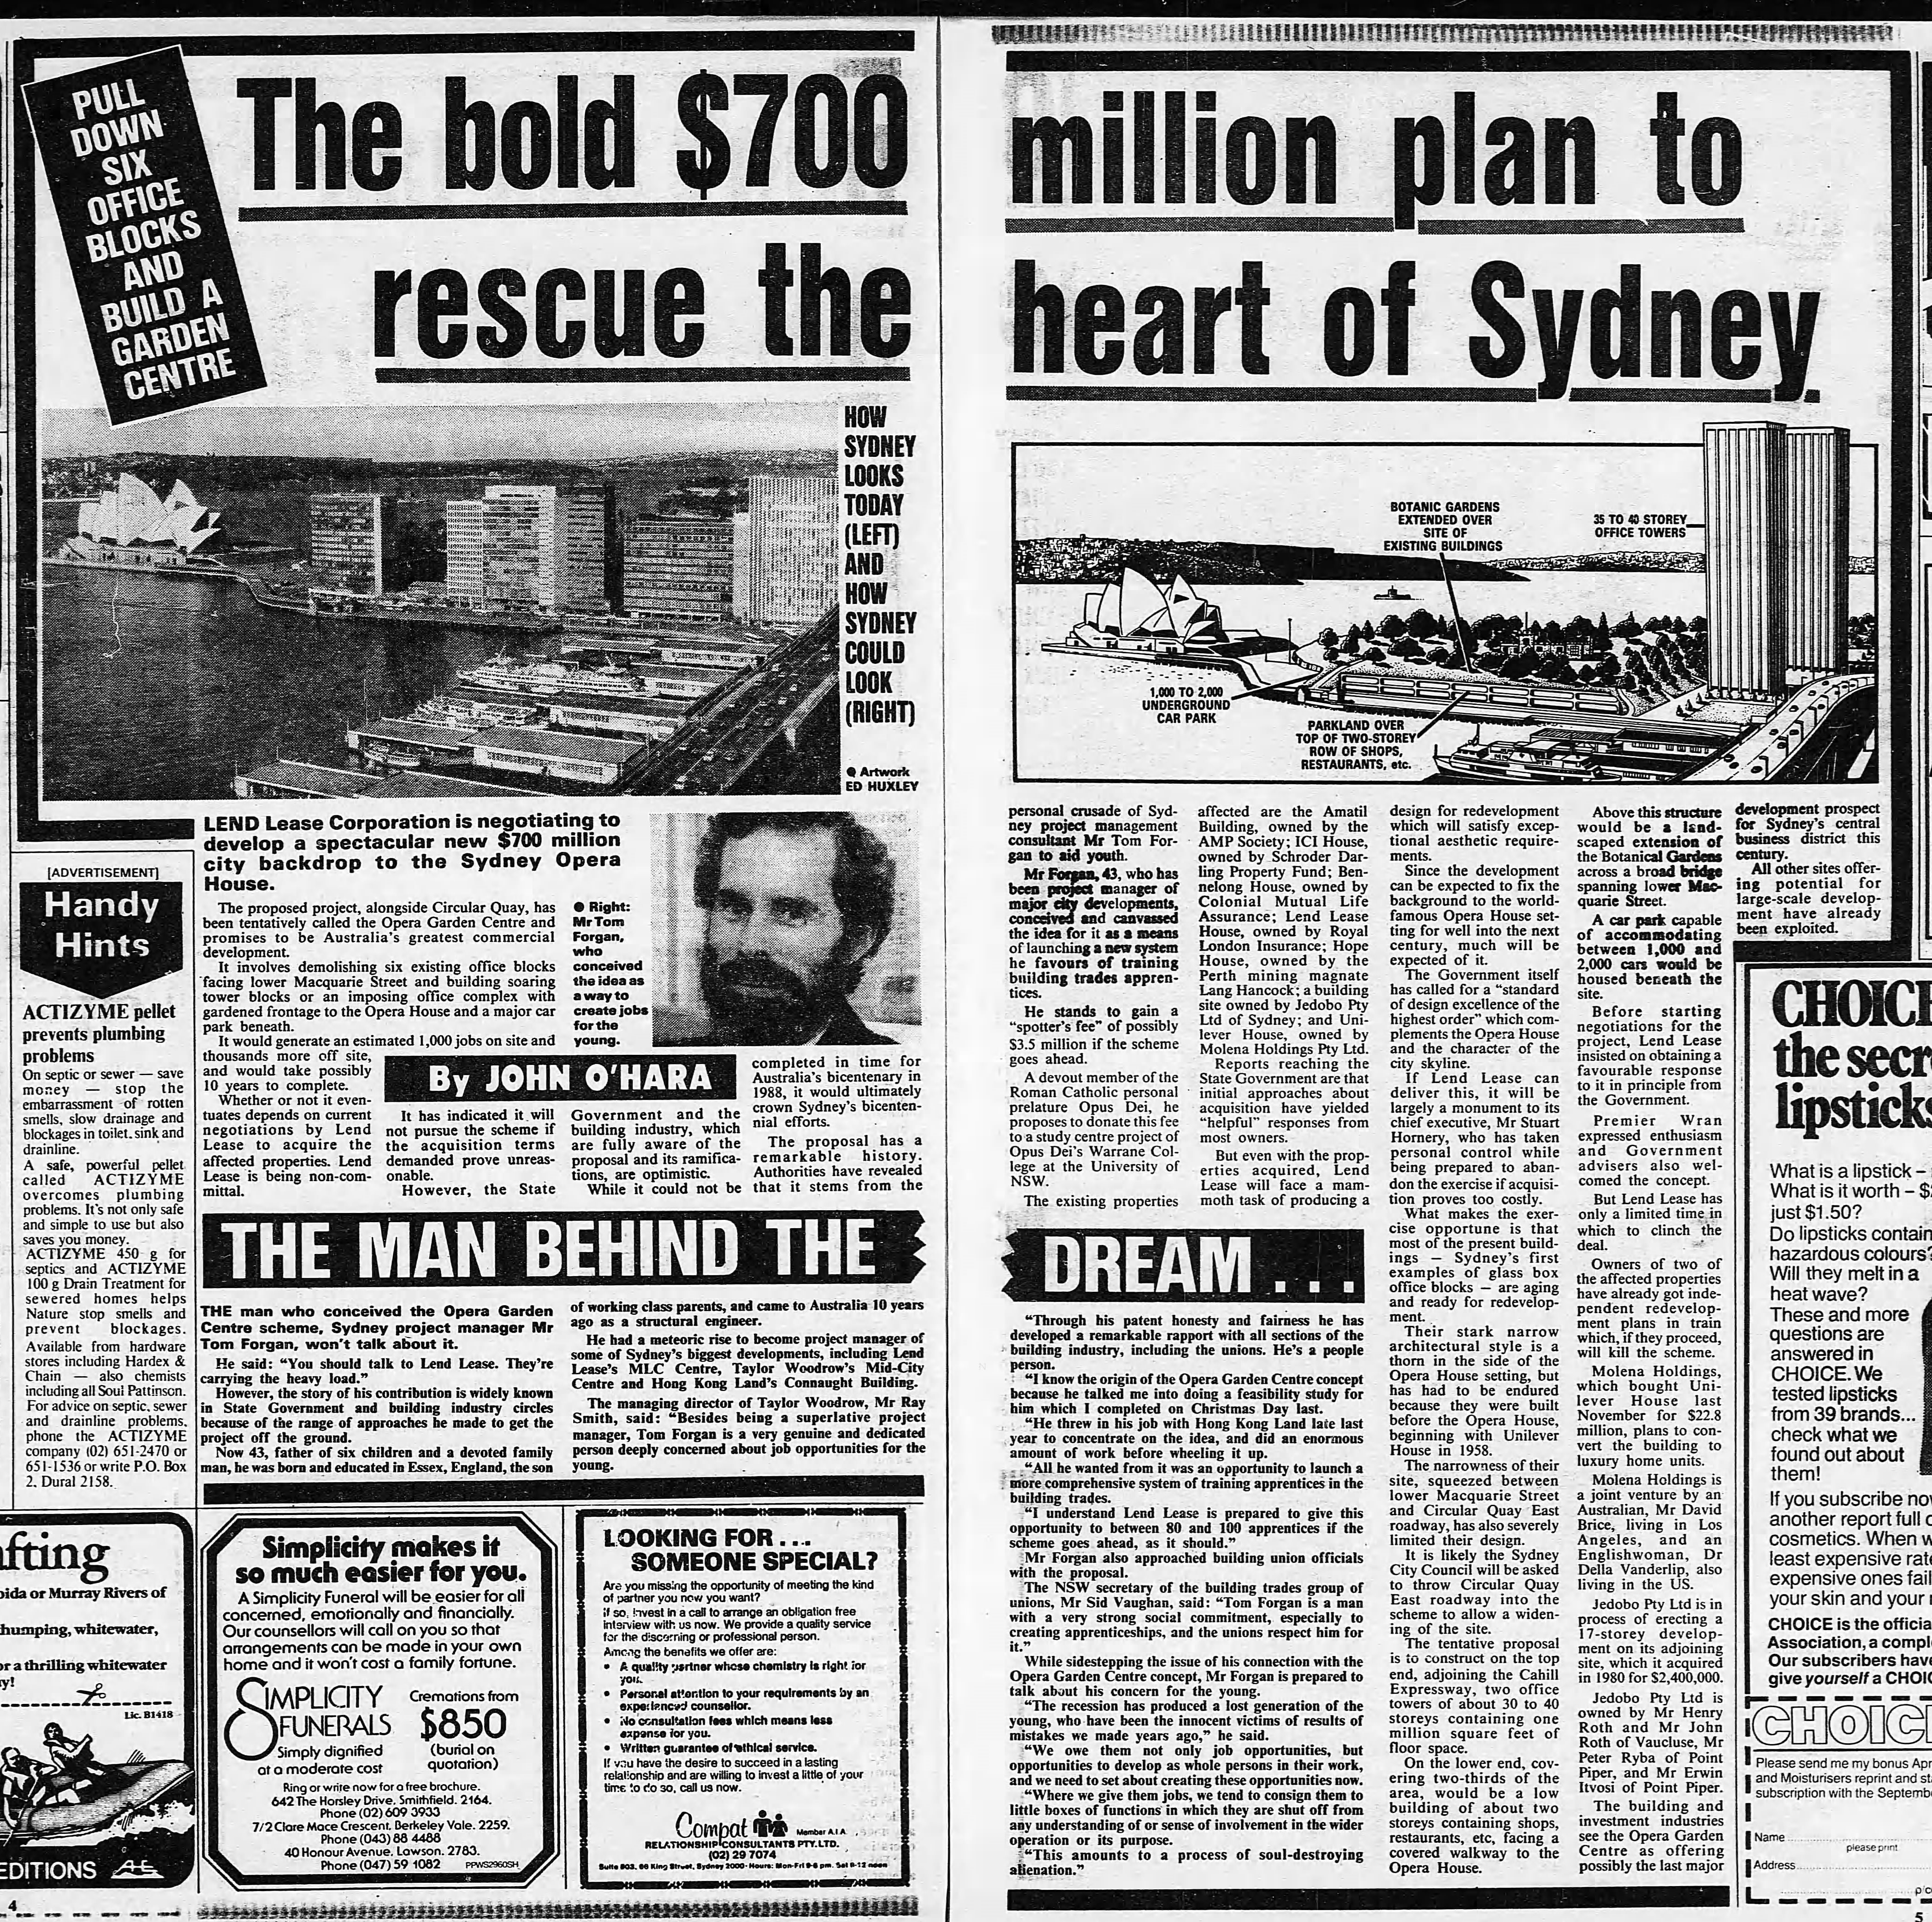 East Circular Quay September 16 1984 Sun Herald 4-5